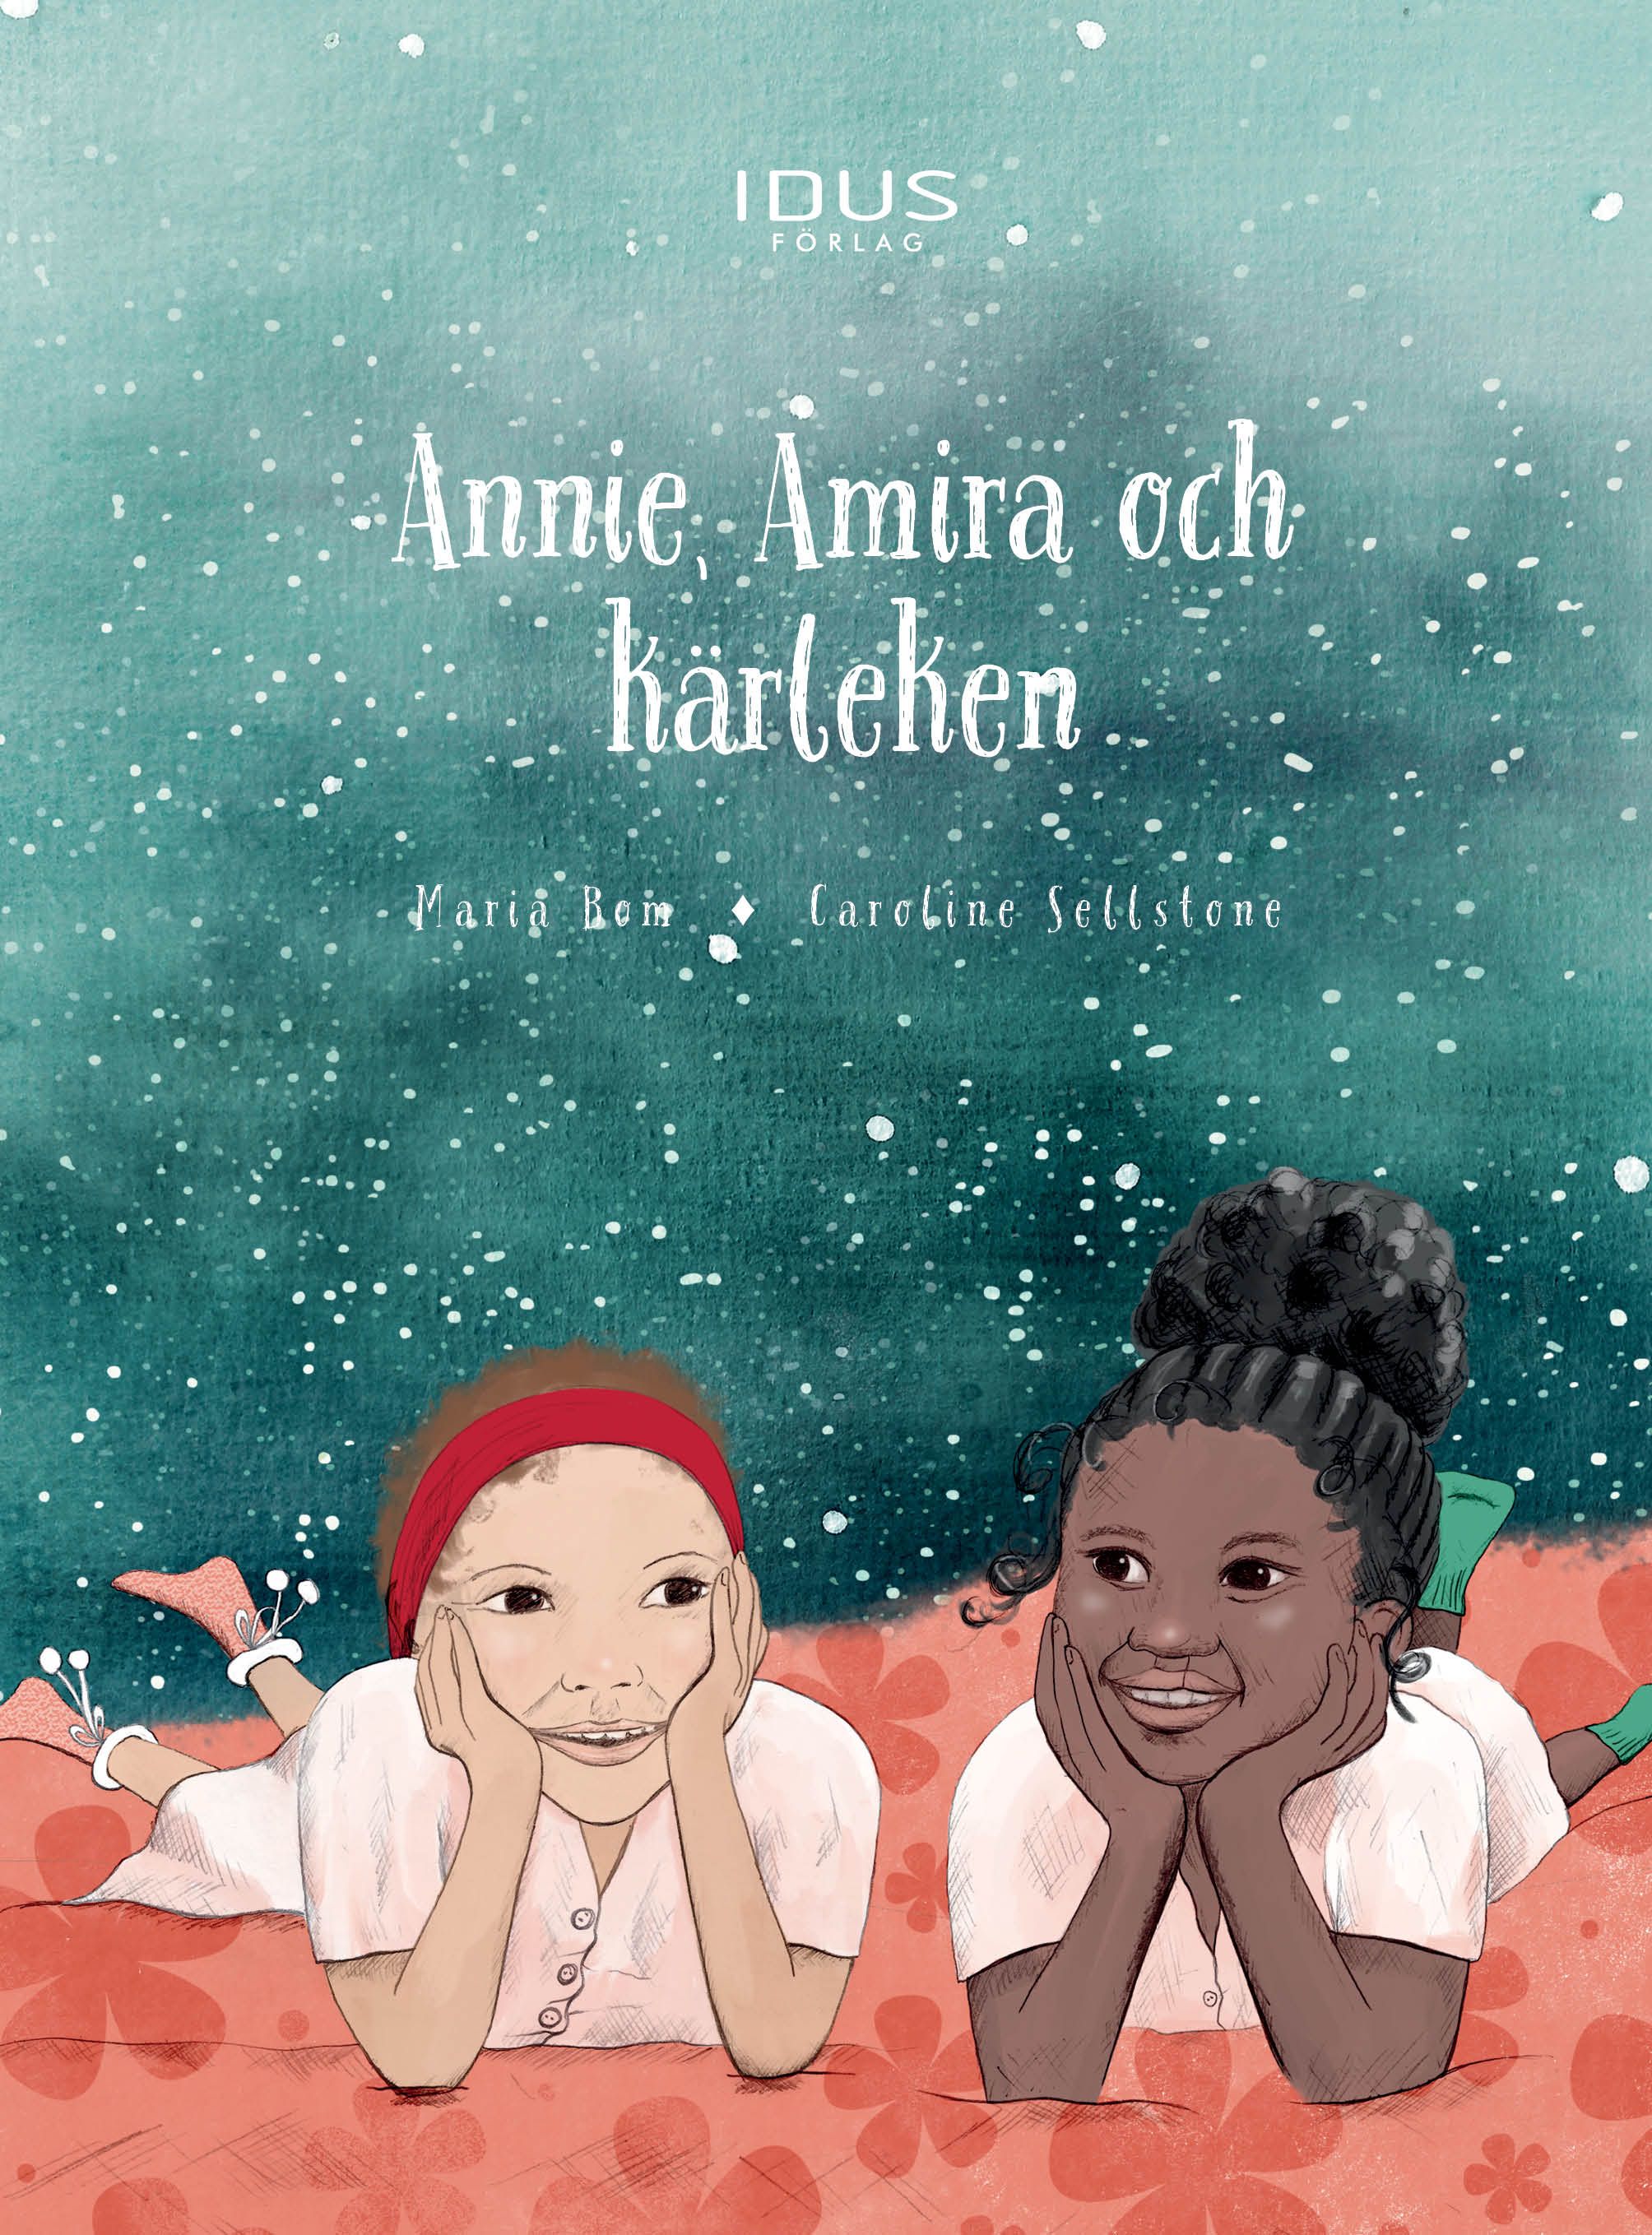 Annie, Amira och kärleken, eBook by Maria Bom